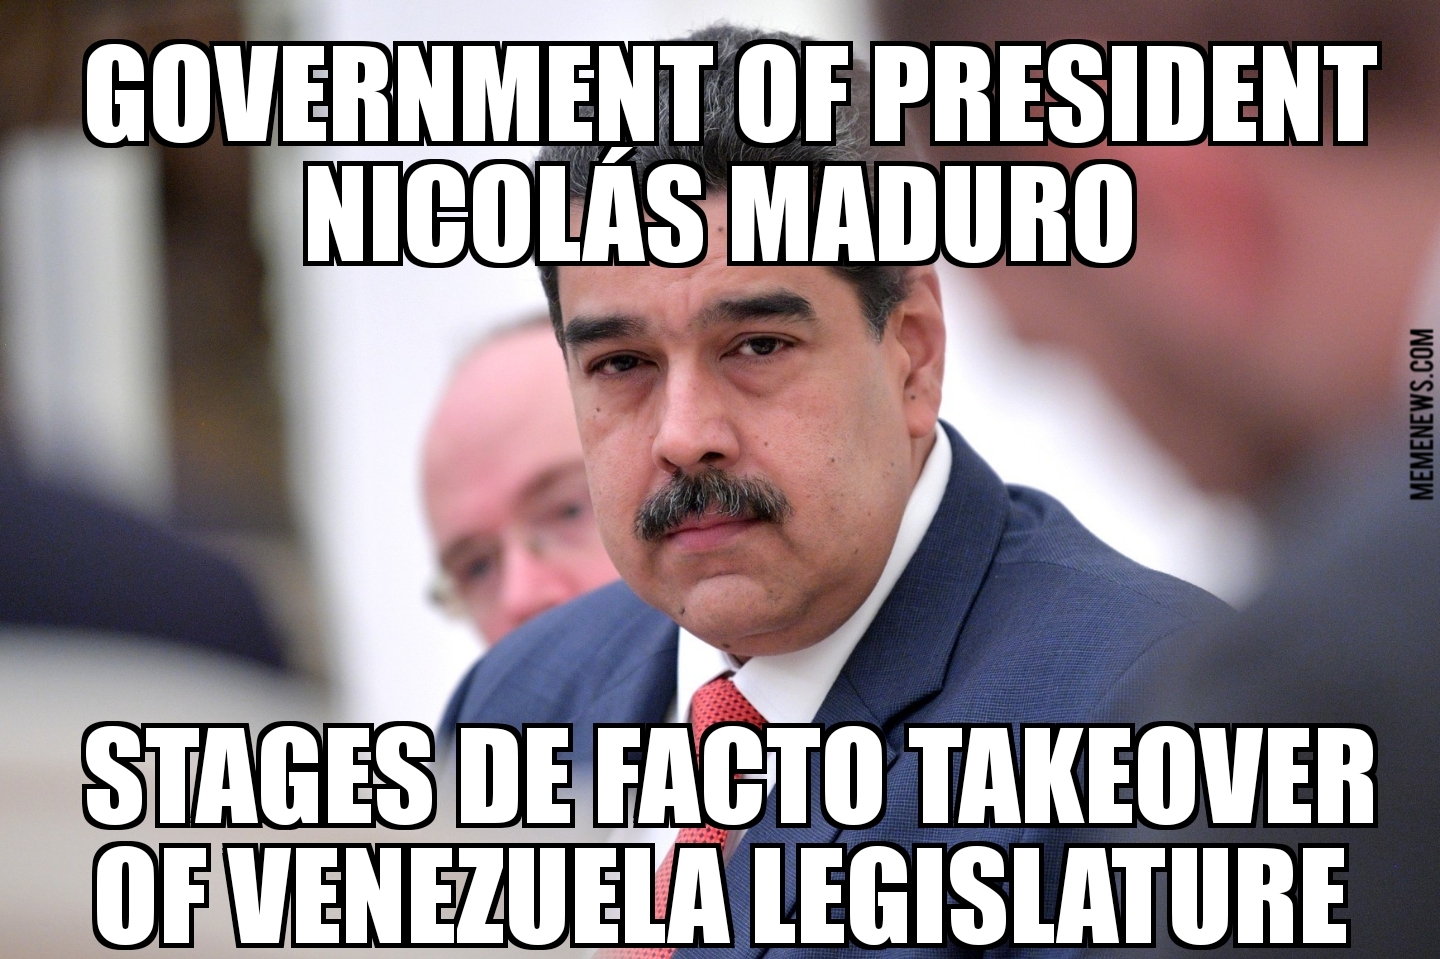 Maduro government stages takeover of Venezuela legislature